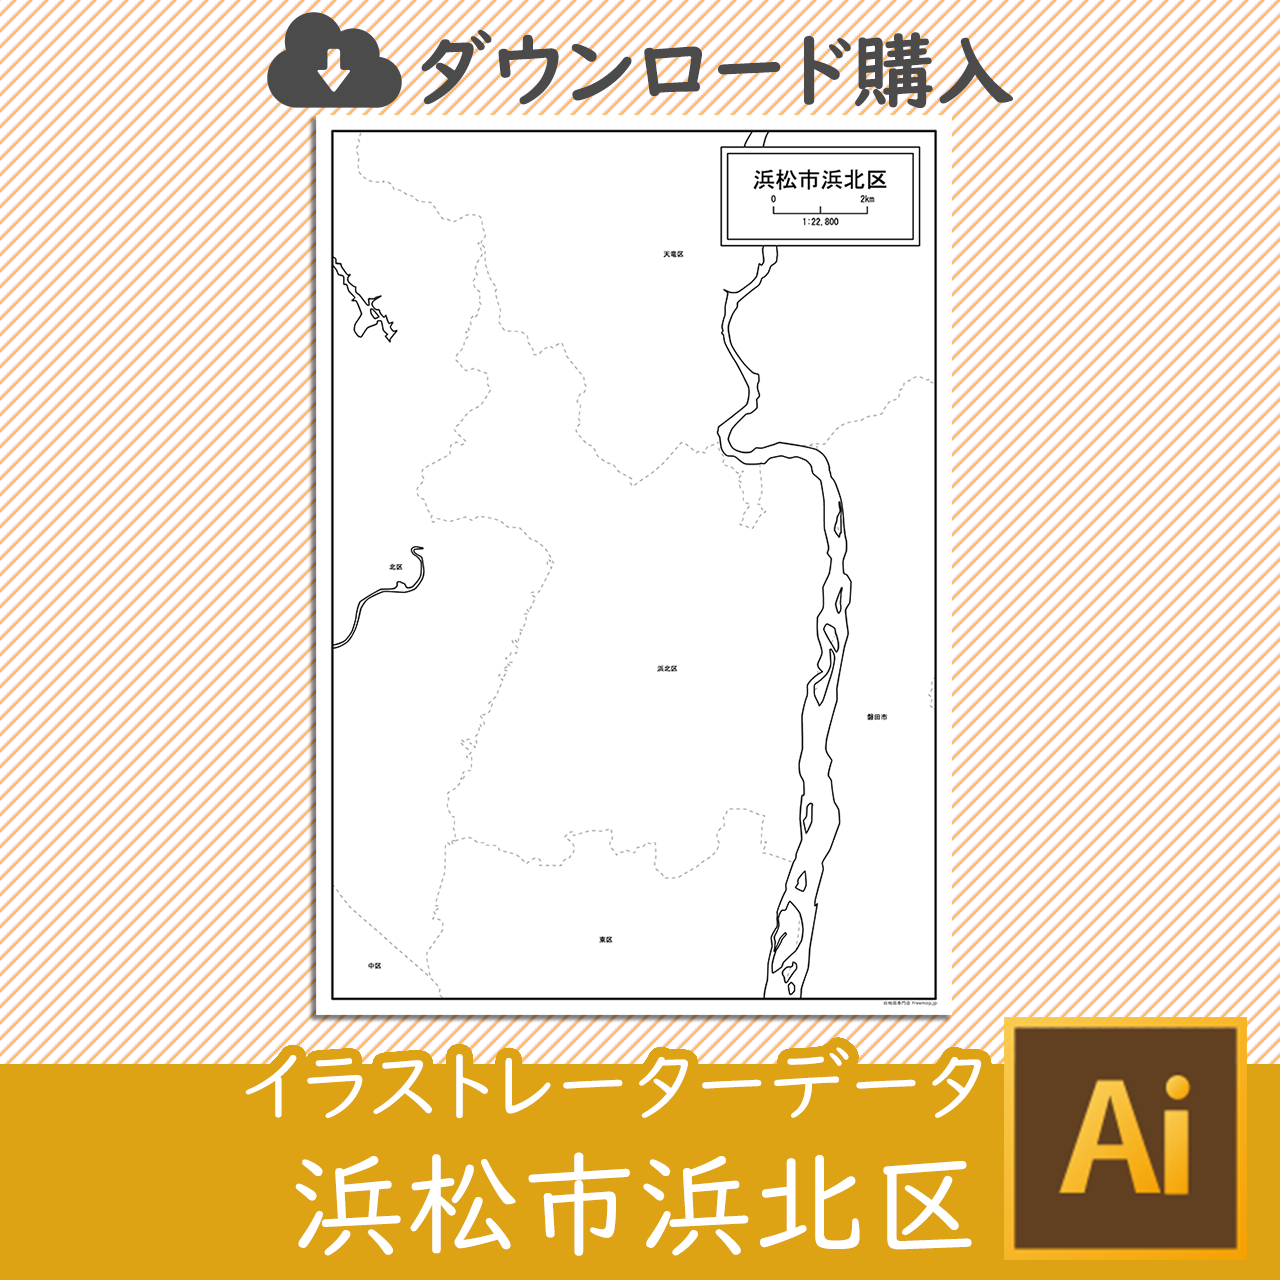 浜松市浜北区のaiデータのサムネイル画像